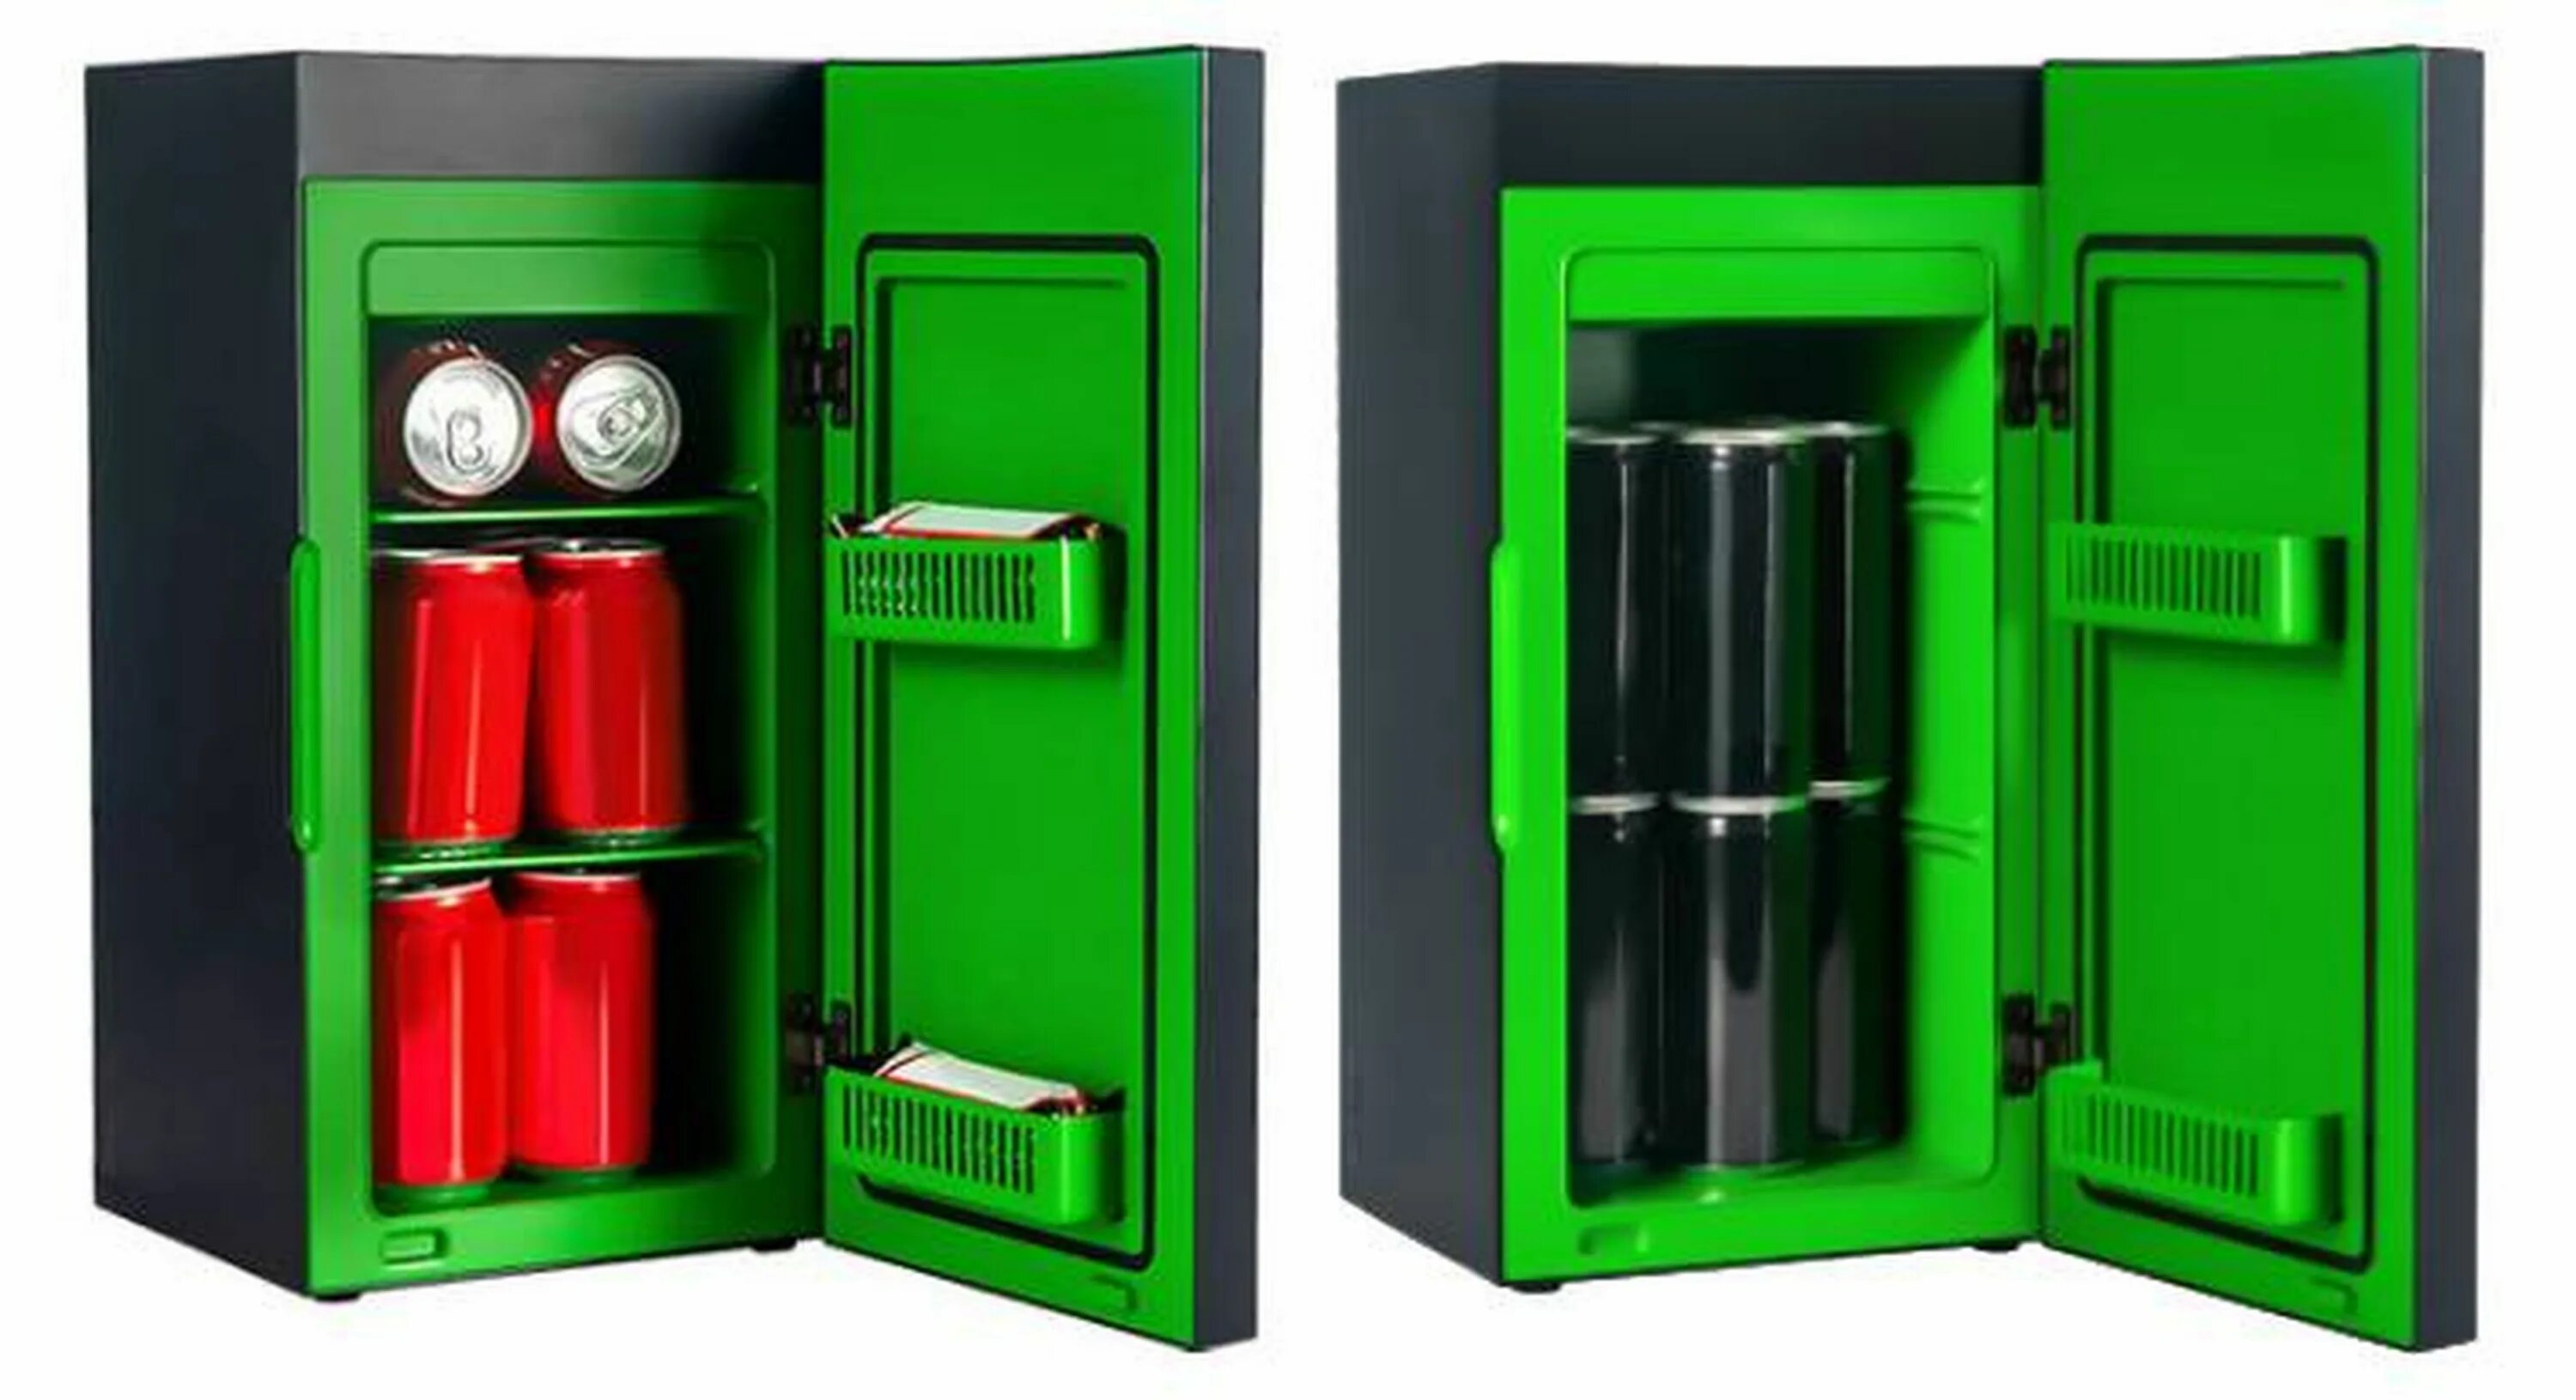 Мини холодильник Xbox Series x. Xbox Mini Fridge. Xbox мини холодильник велдбрис. Xbox Series x Replica Mini Fridge.